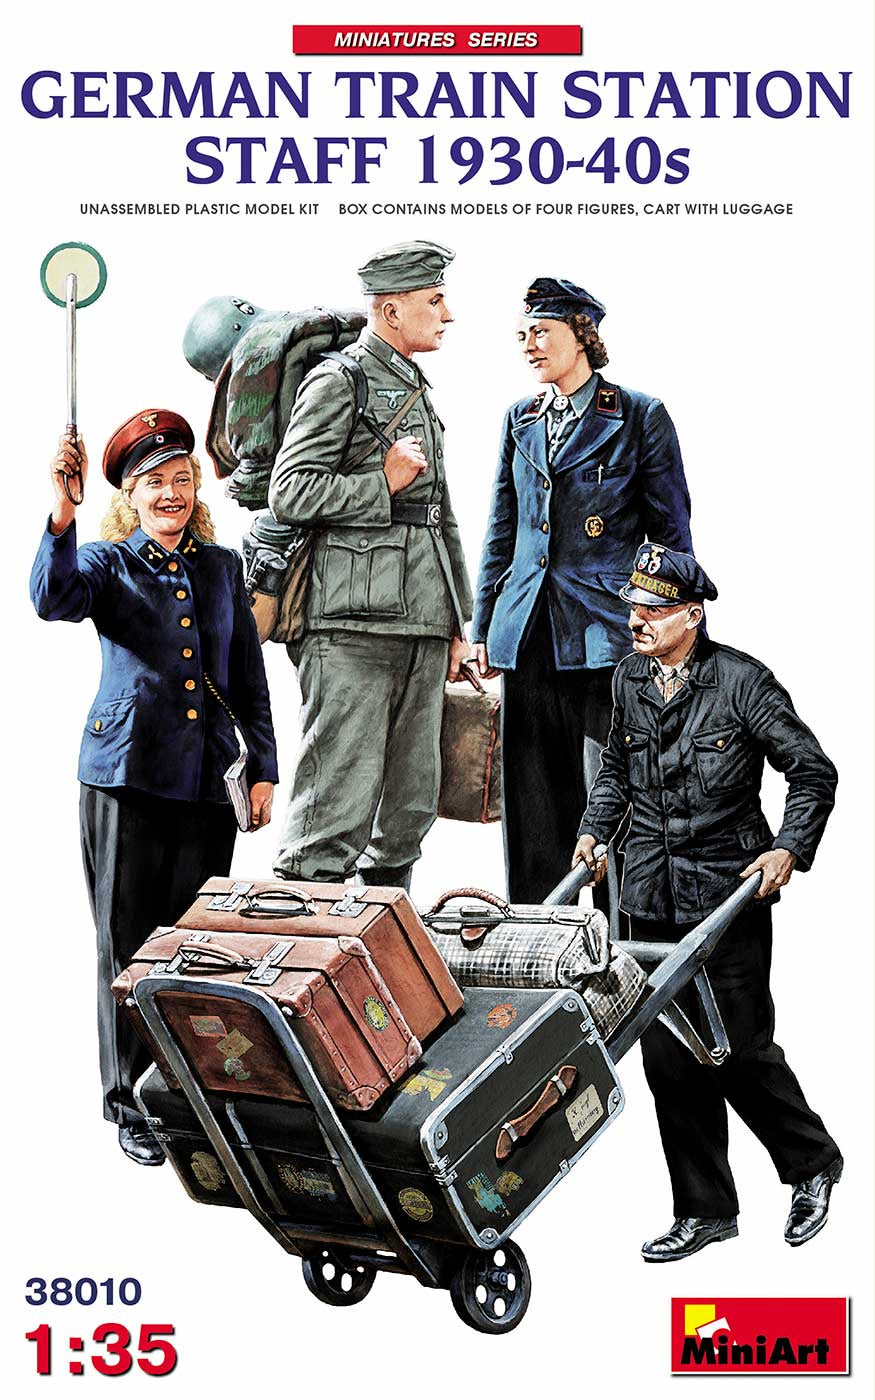 Miniart 1:35 German Train Station Staff 1930 - 1940s